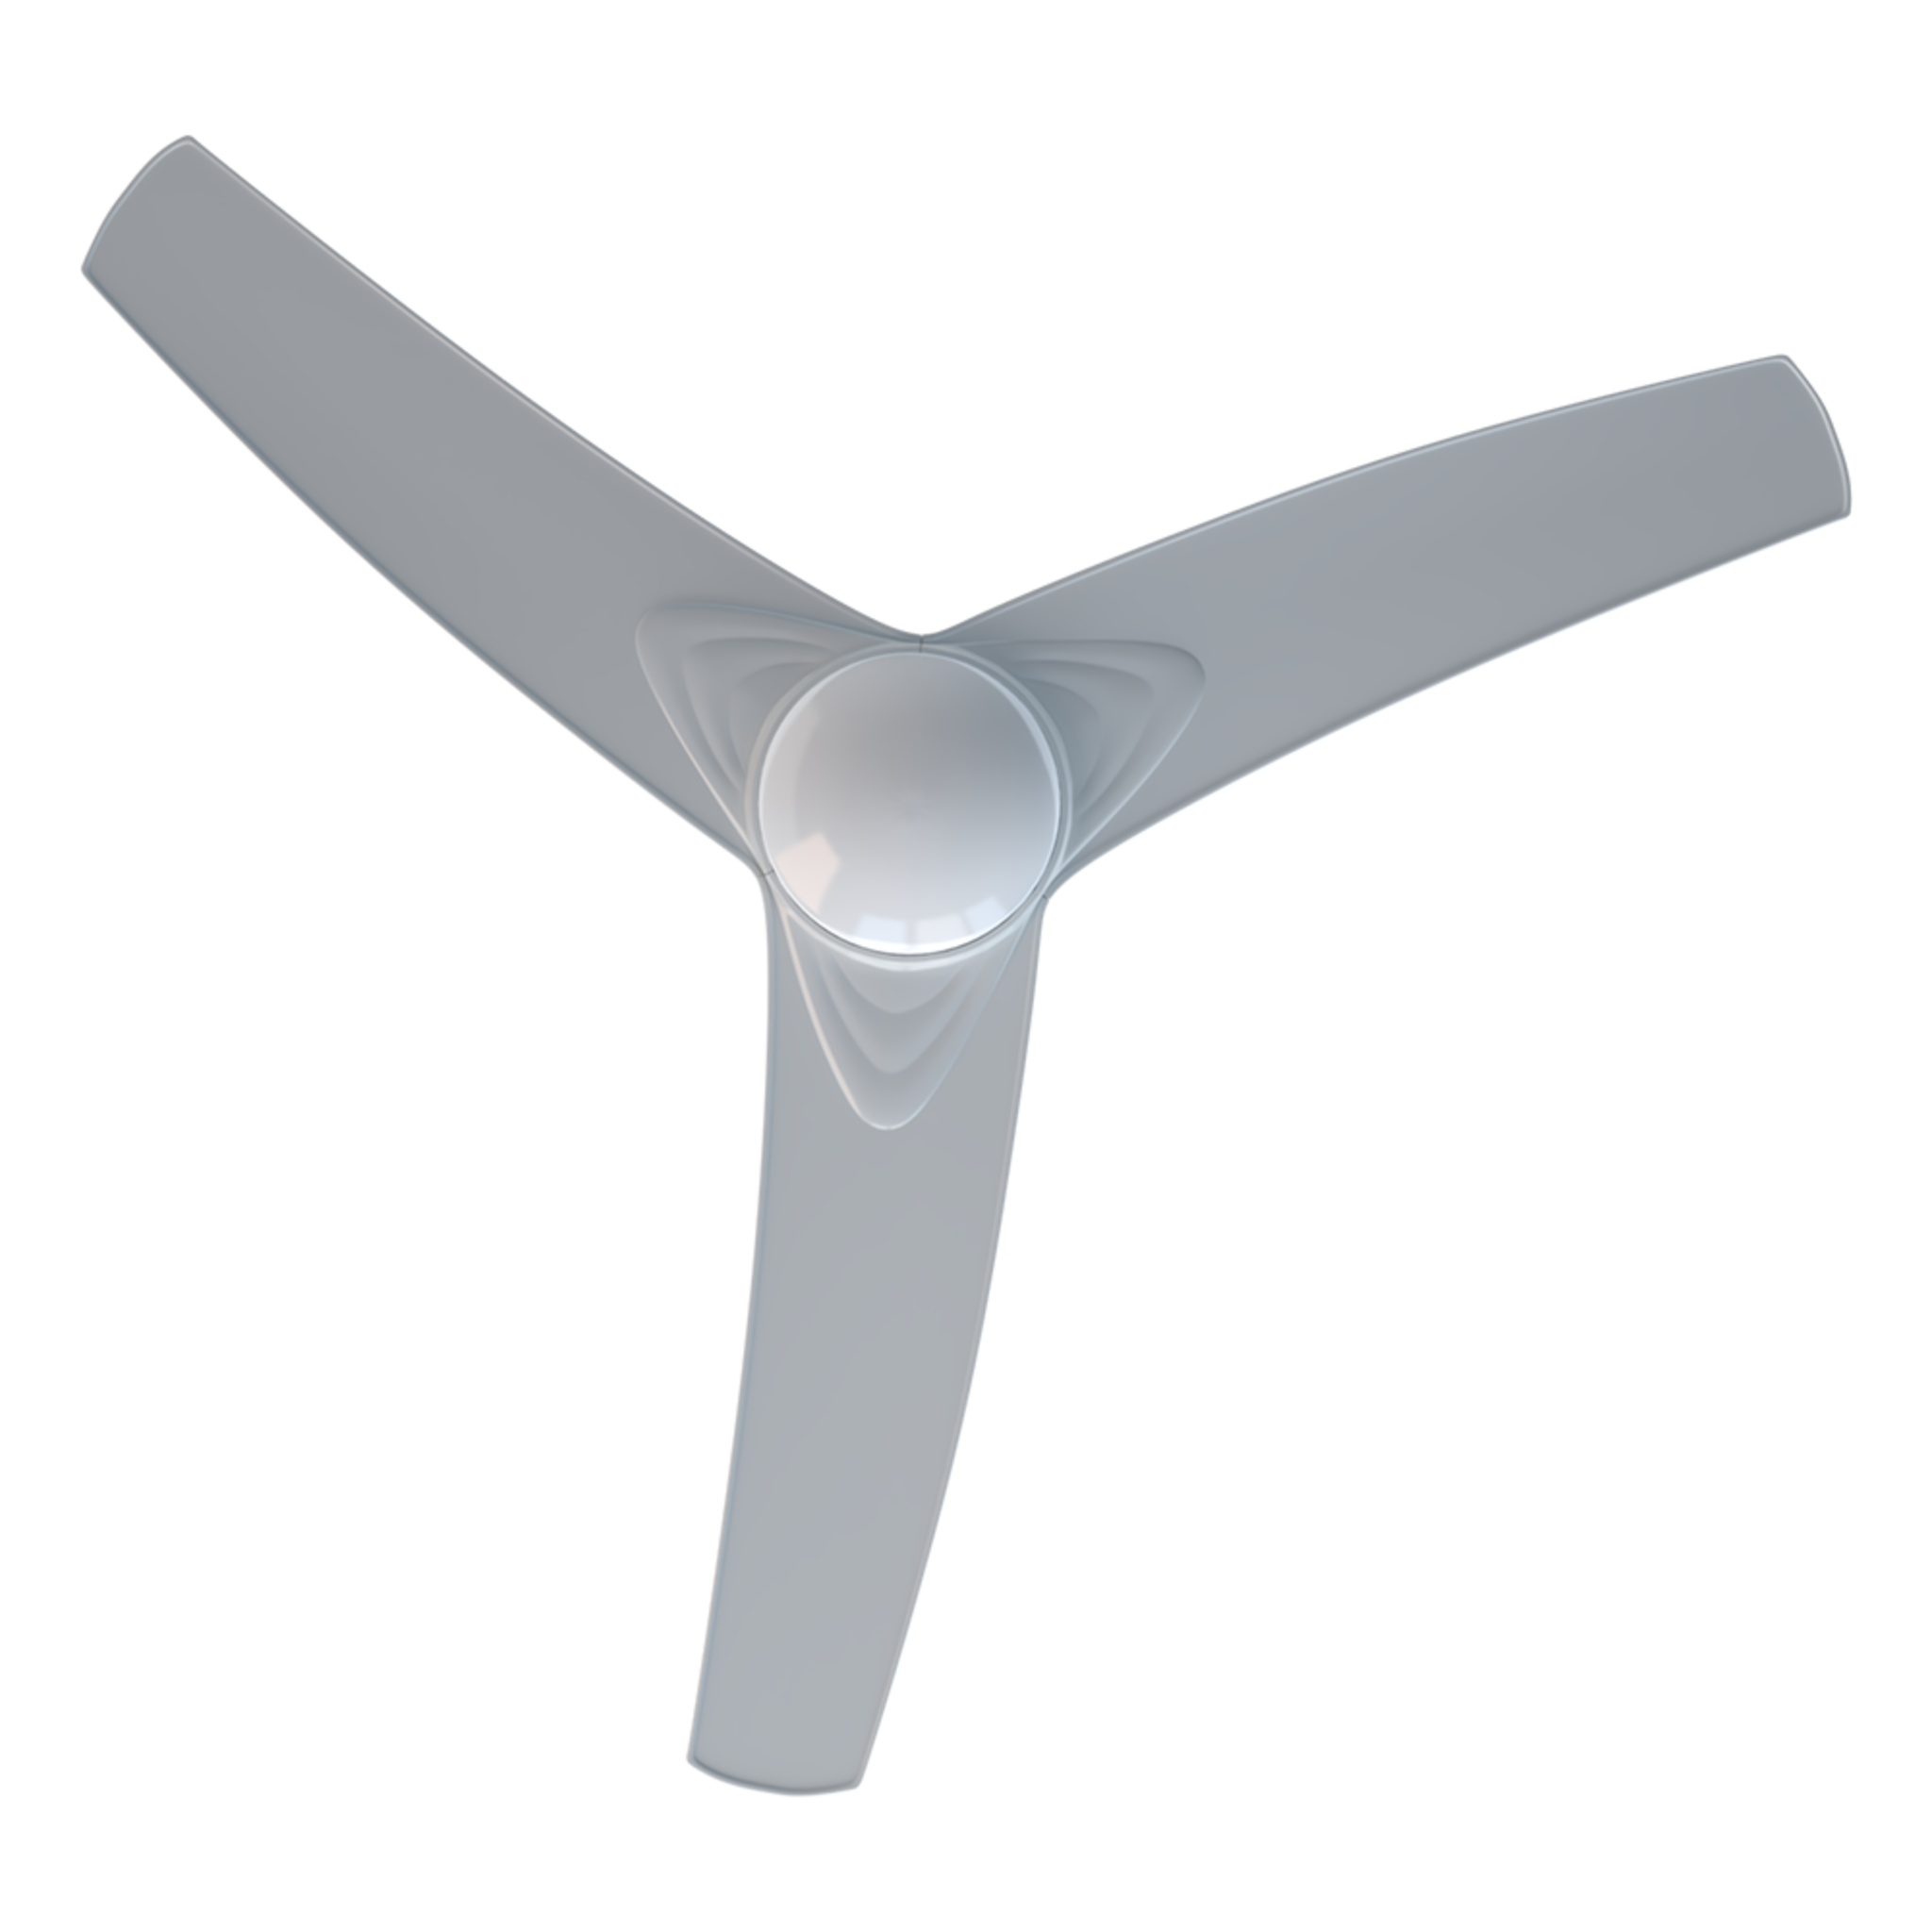 Ventilateur de plafond EnergySilence Aero 560. 52" / 132 cm de diamètre